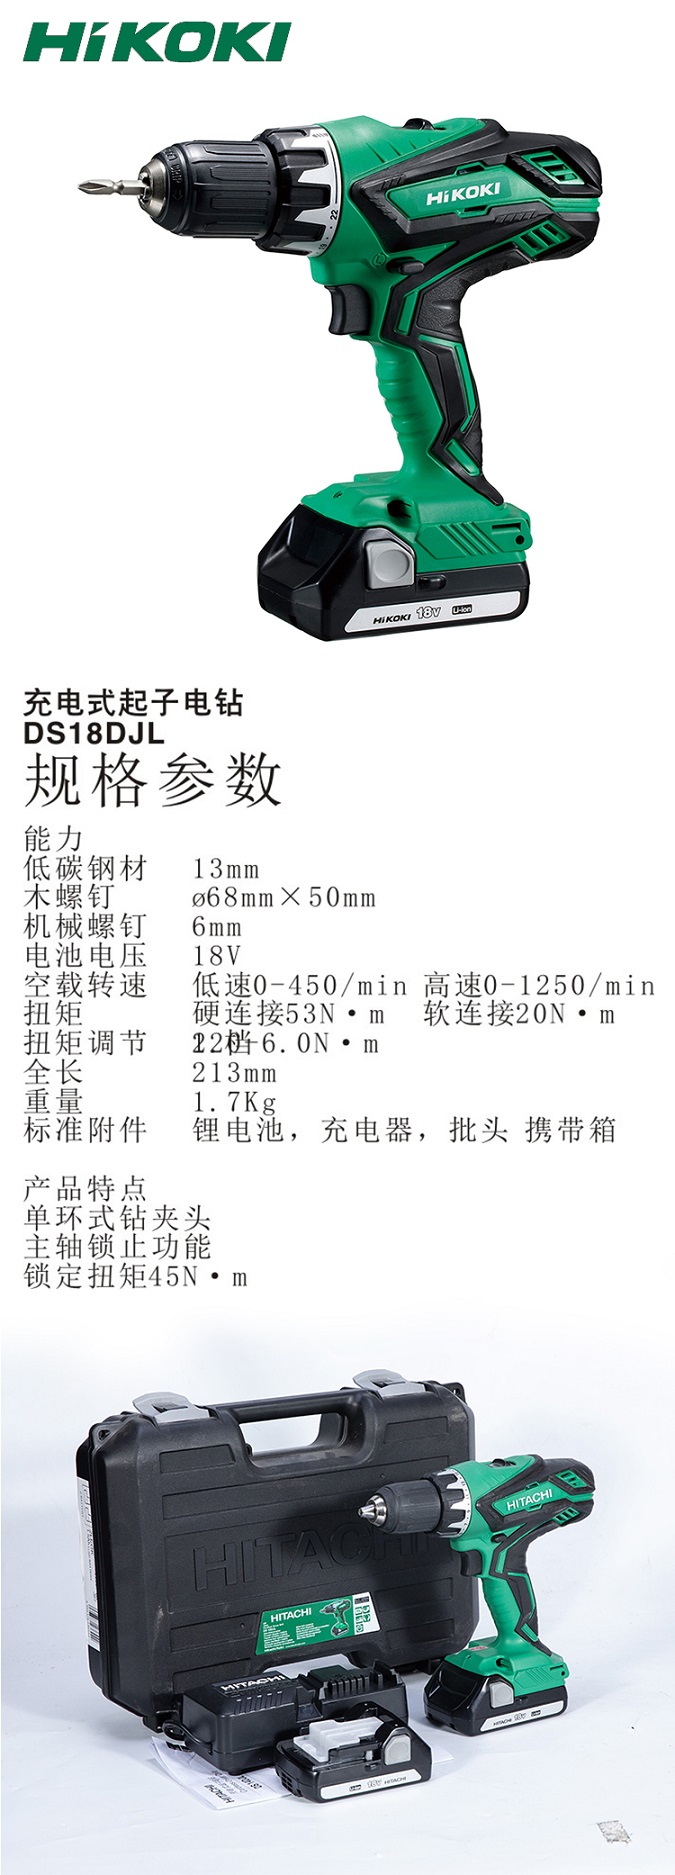 高壹充电钻DS18DJL 18V双电.jpg